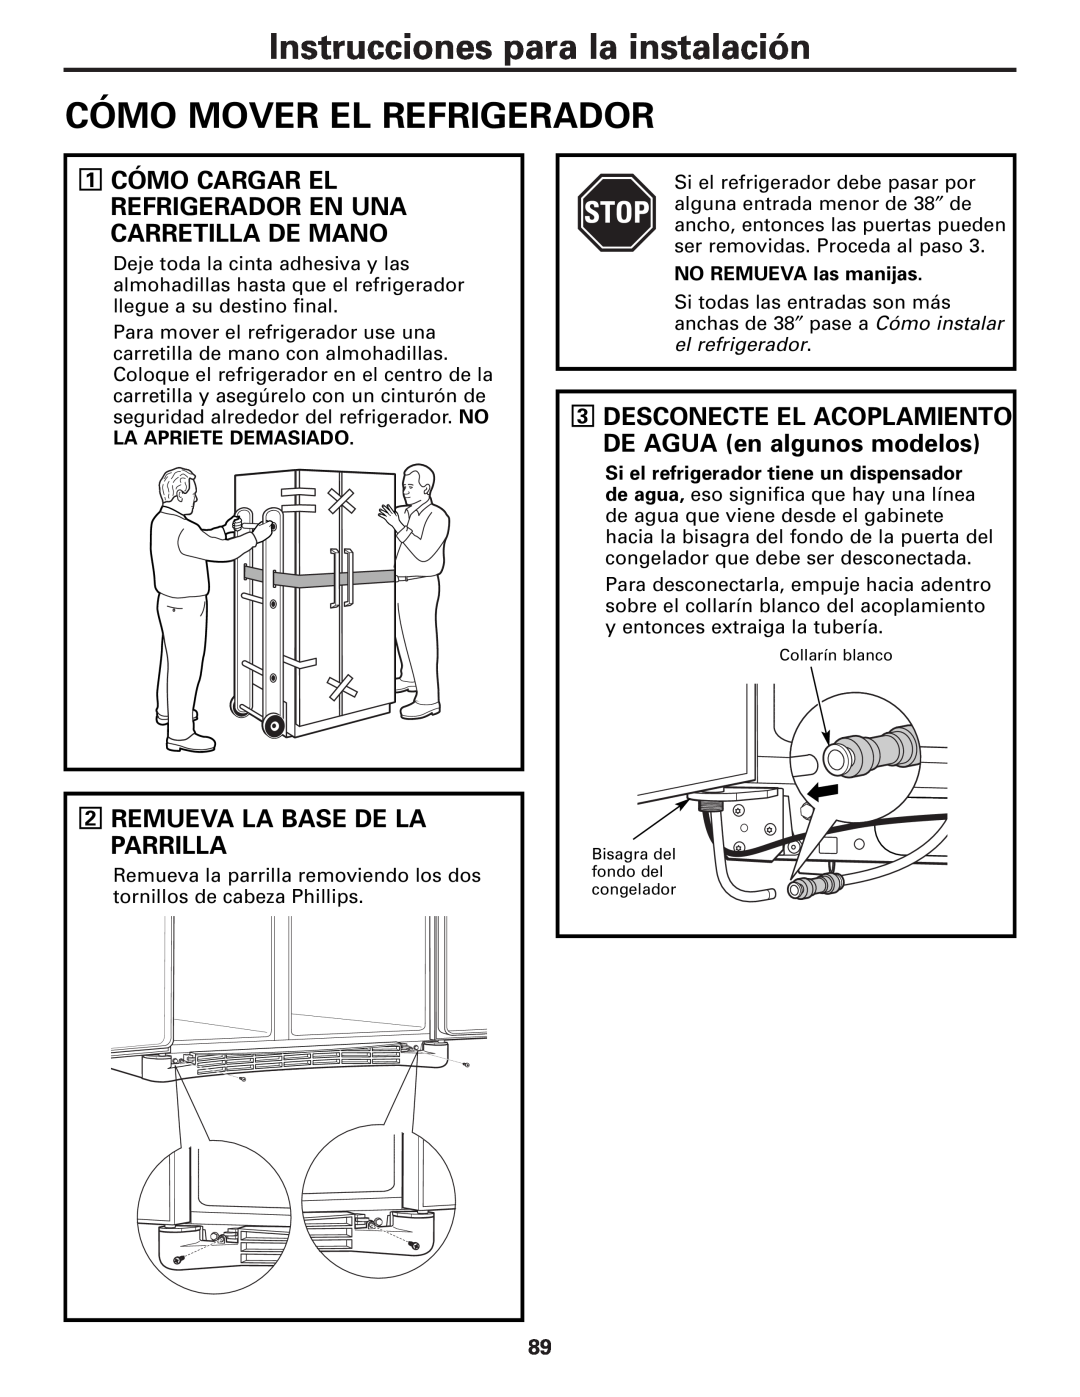 GE Monogram 23 Instrucciones para la instalación, Cómo Mover El Refrigerador, 2REMUEVA LA BASE DE LA PARRILLA 